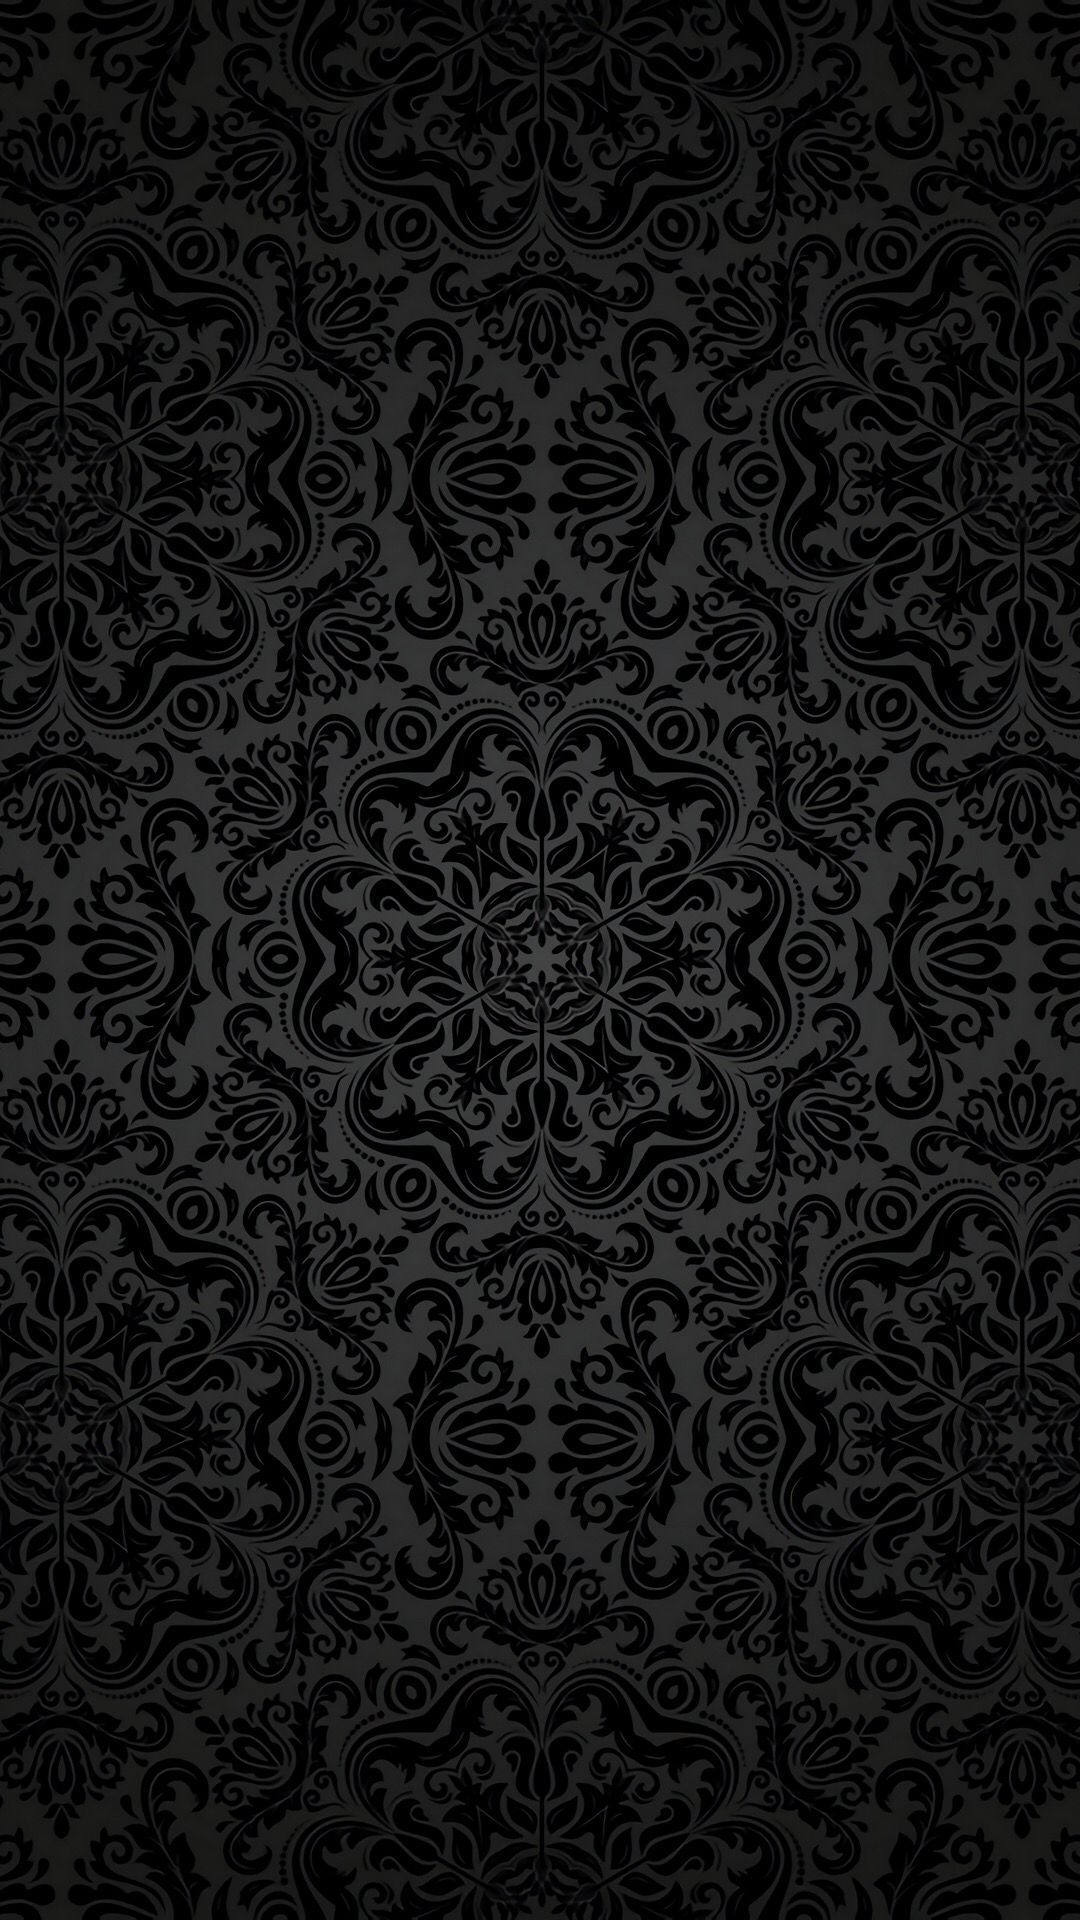 Android wallpaper black .com